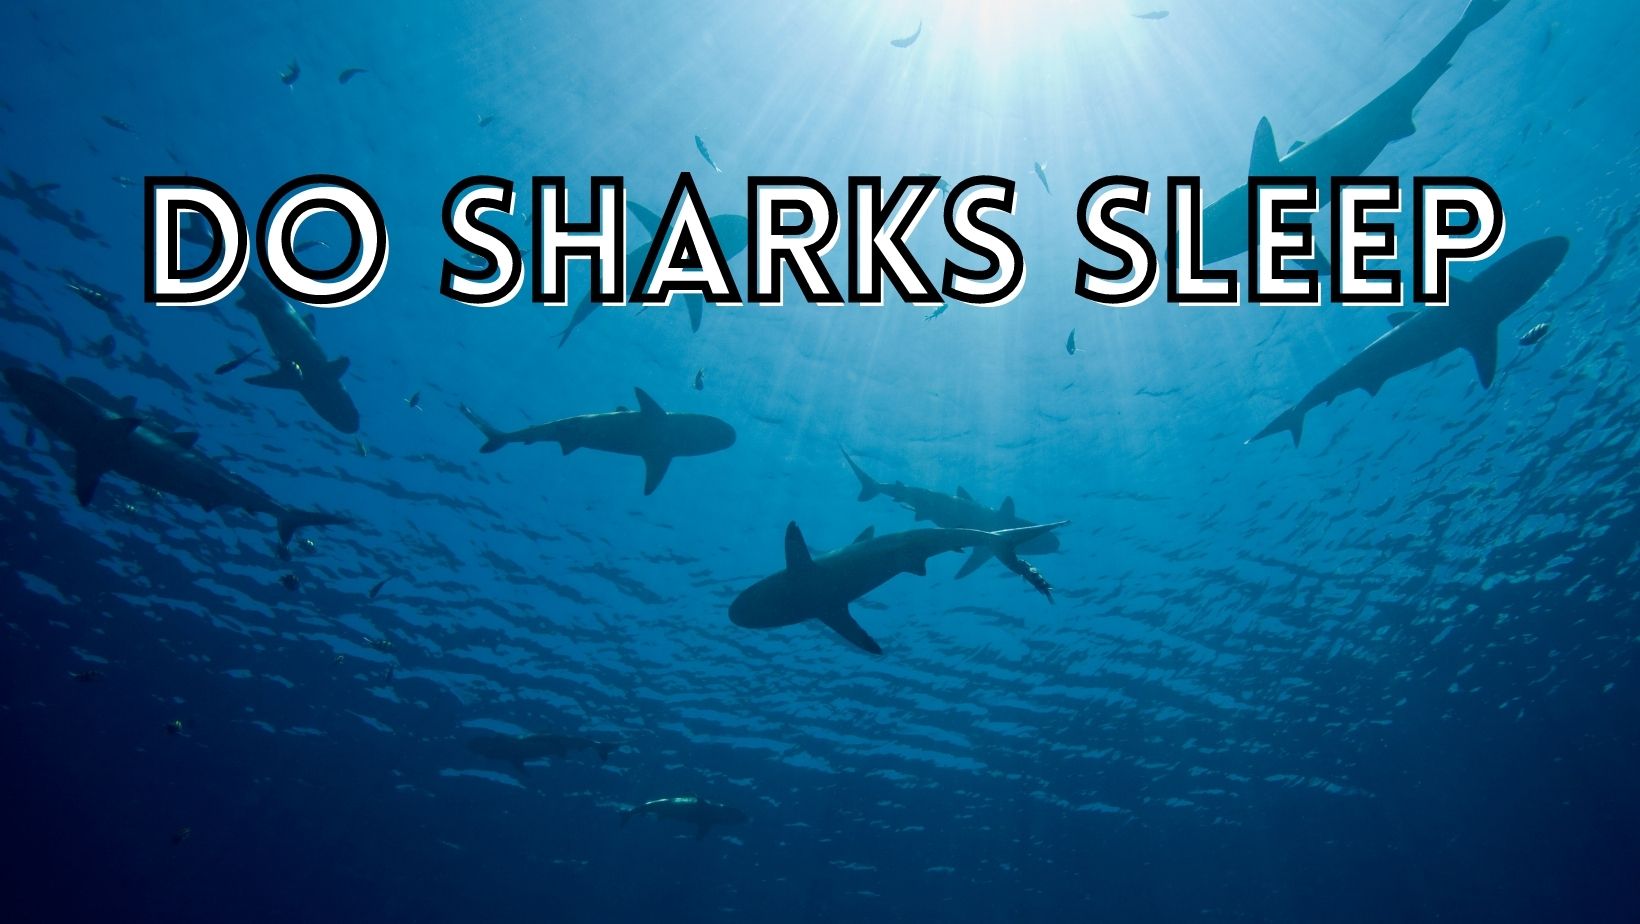 Do sharks ever sleep